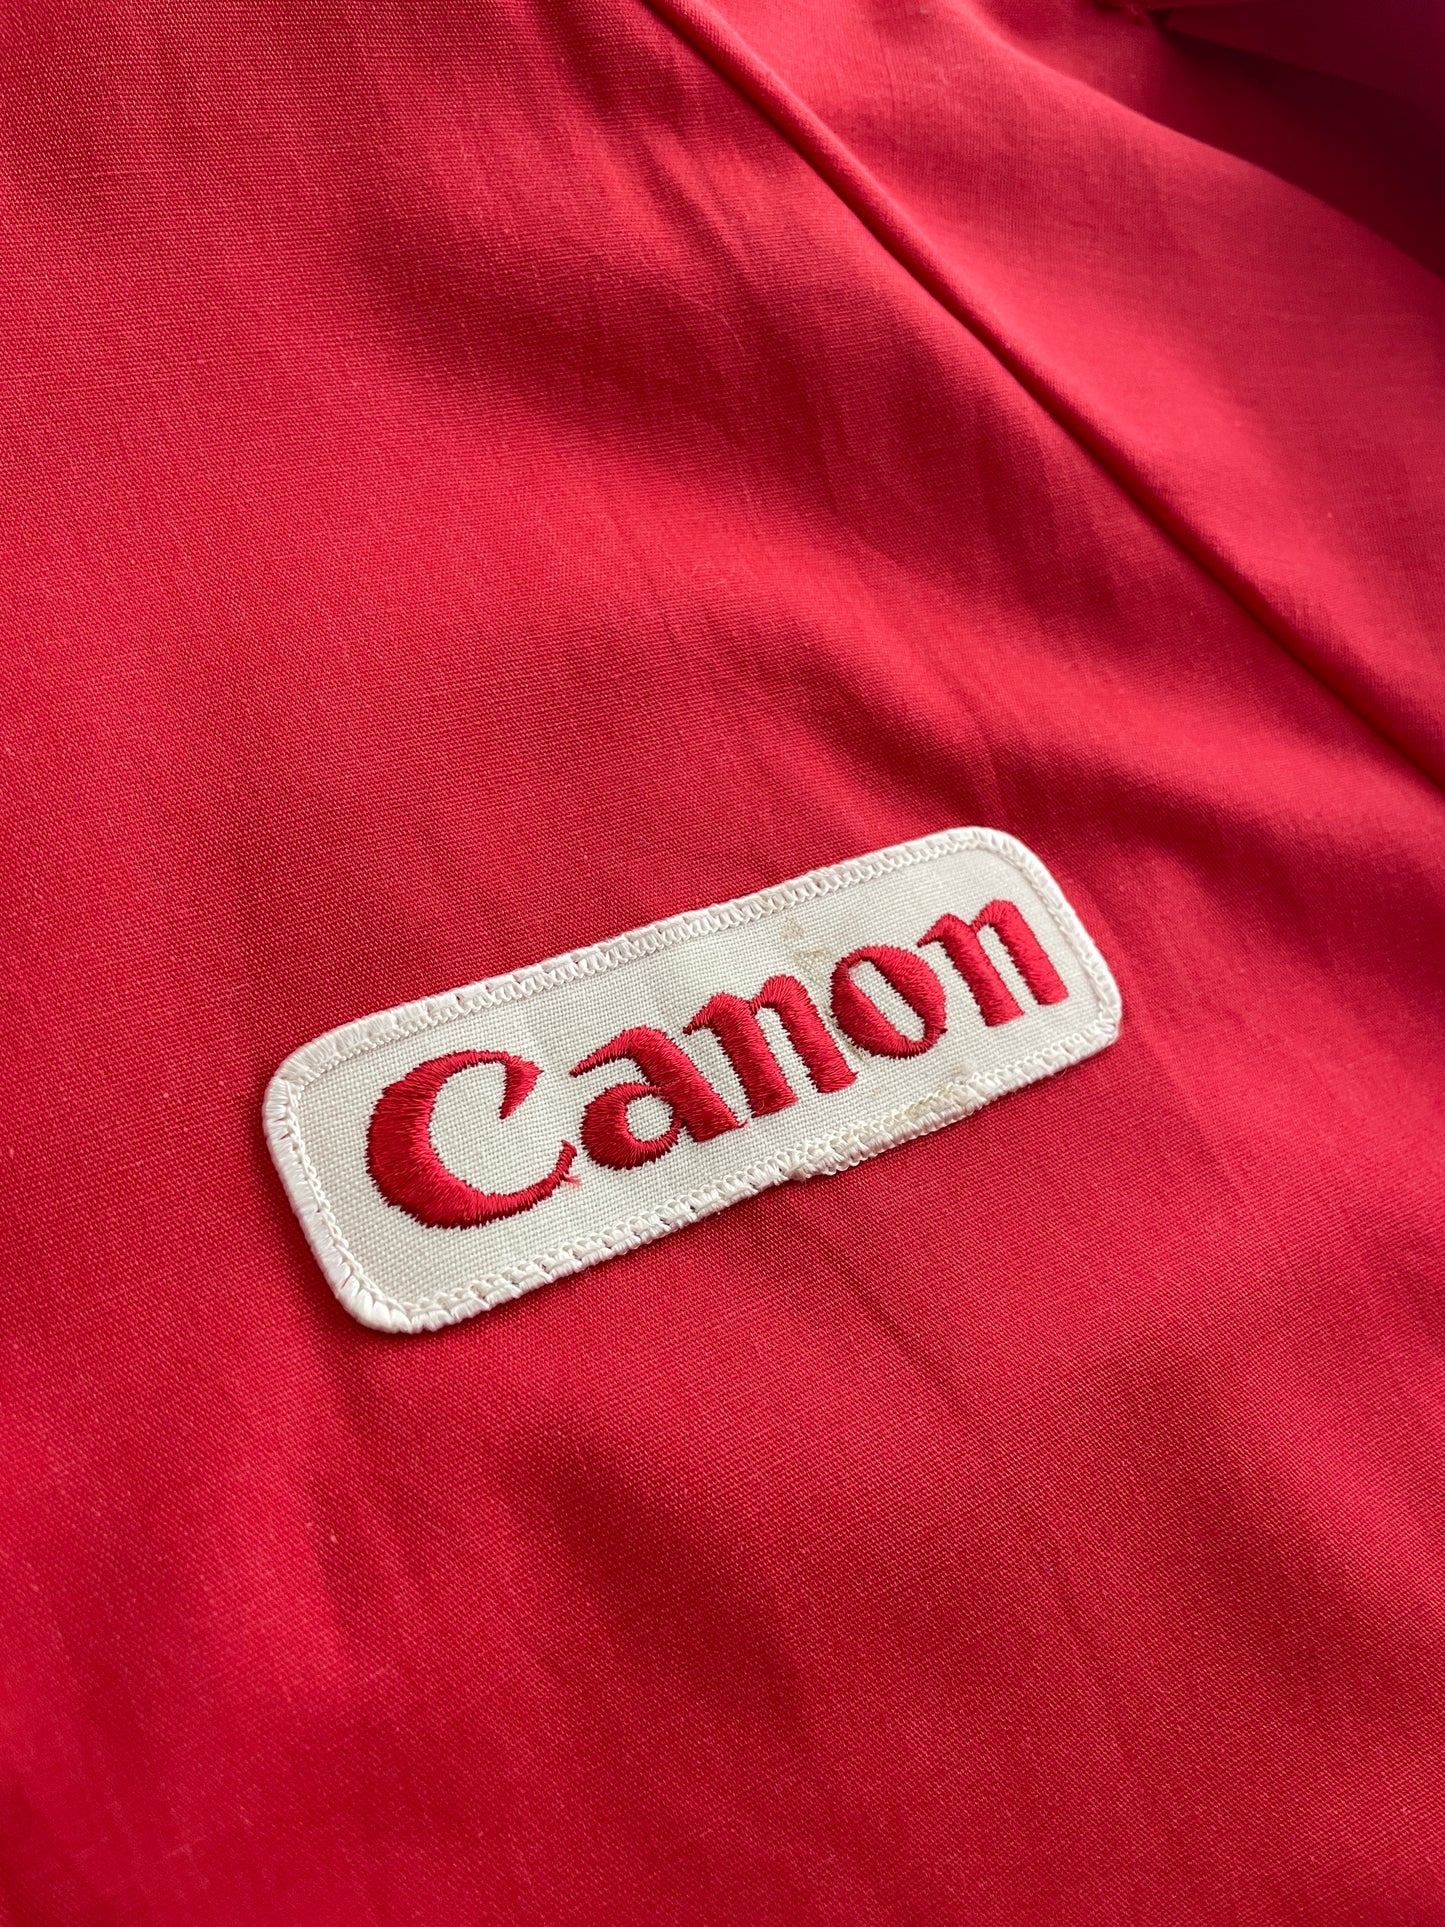 '86 Canon Albuquerque Balloon Festival Jacket [S]